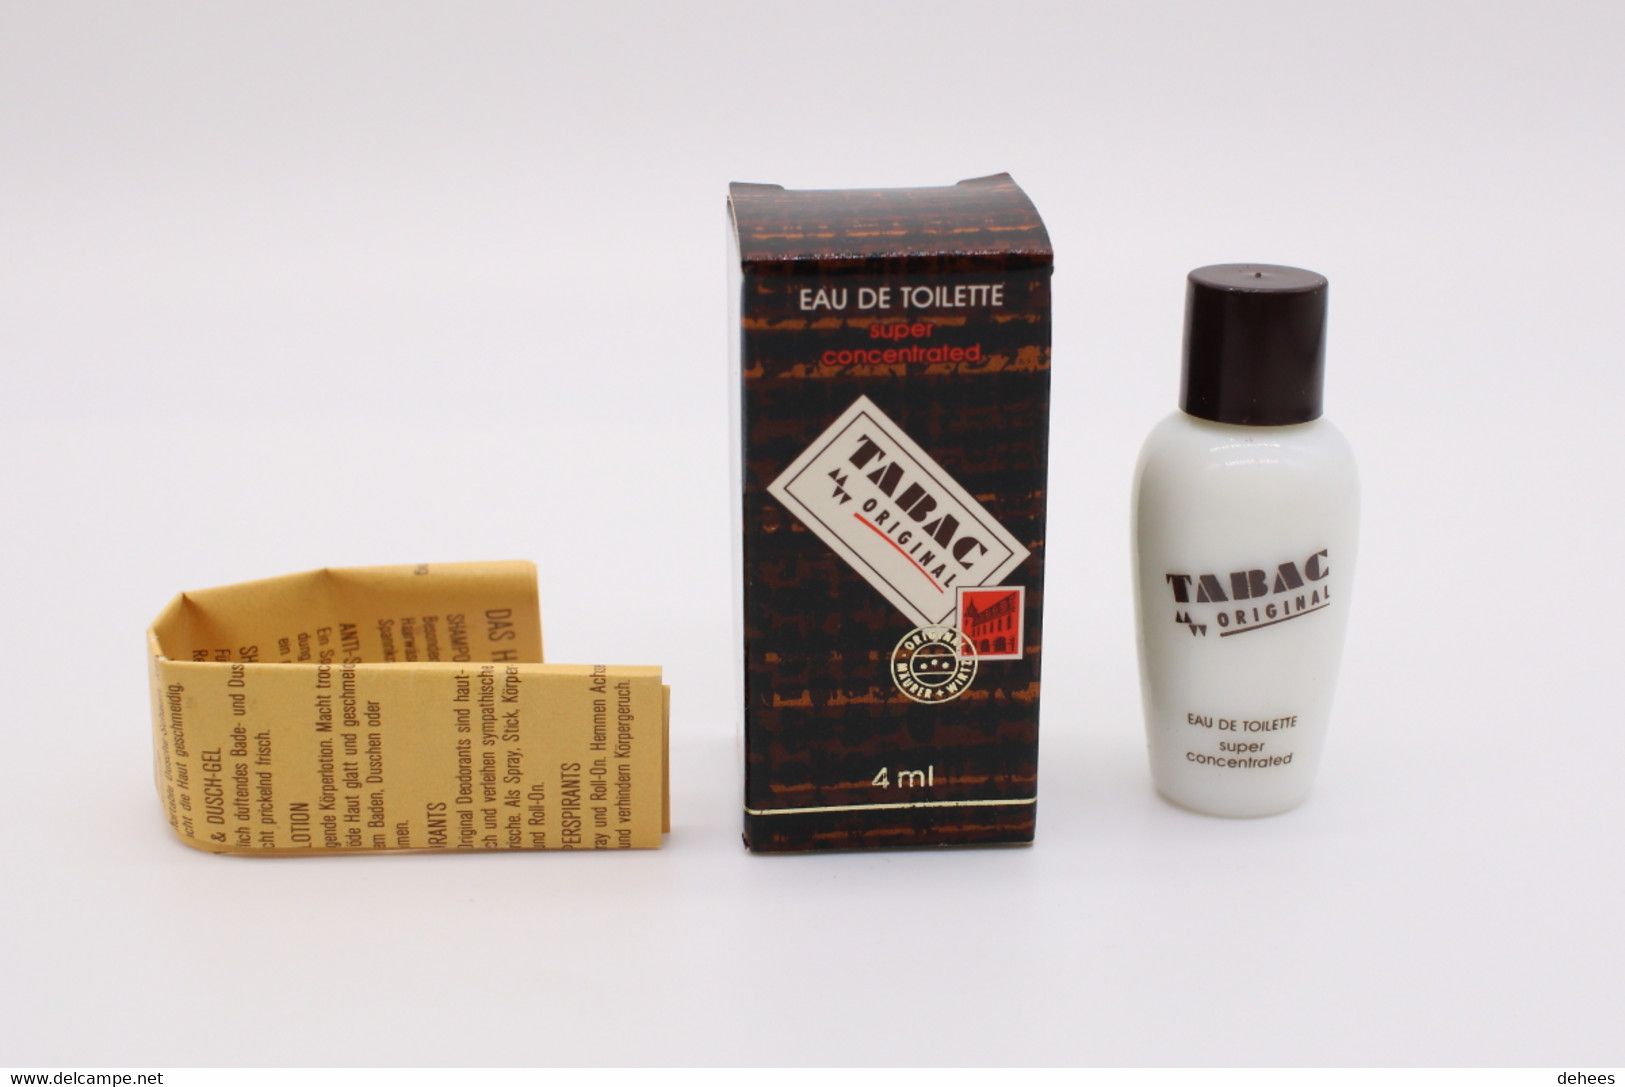 Maurer & Wirtz, Tabac Original - Miniaturen Herrendüfte (mit Verpackung)